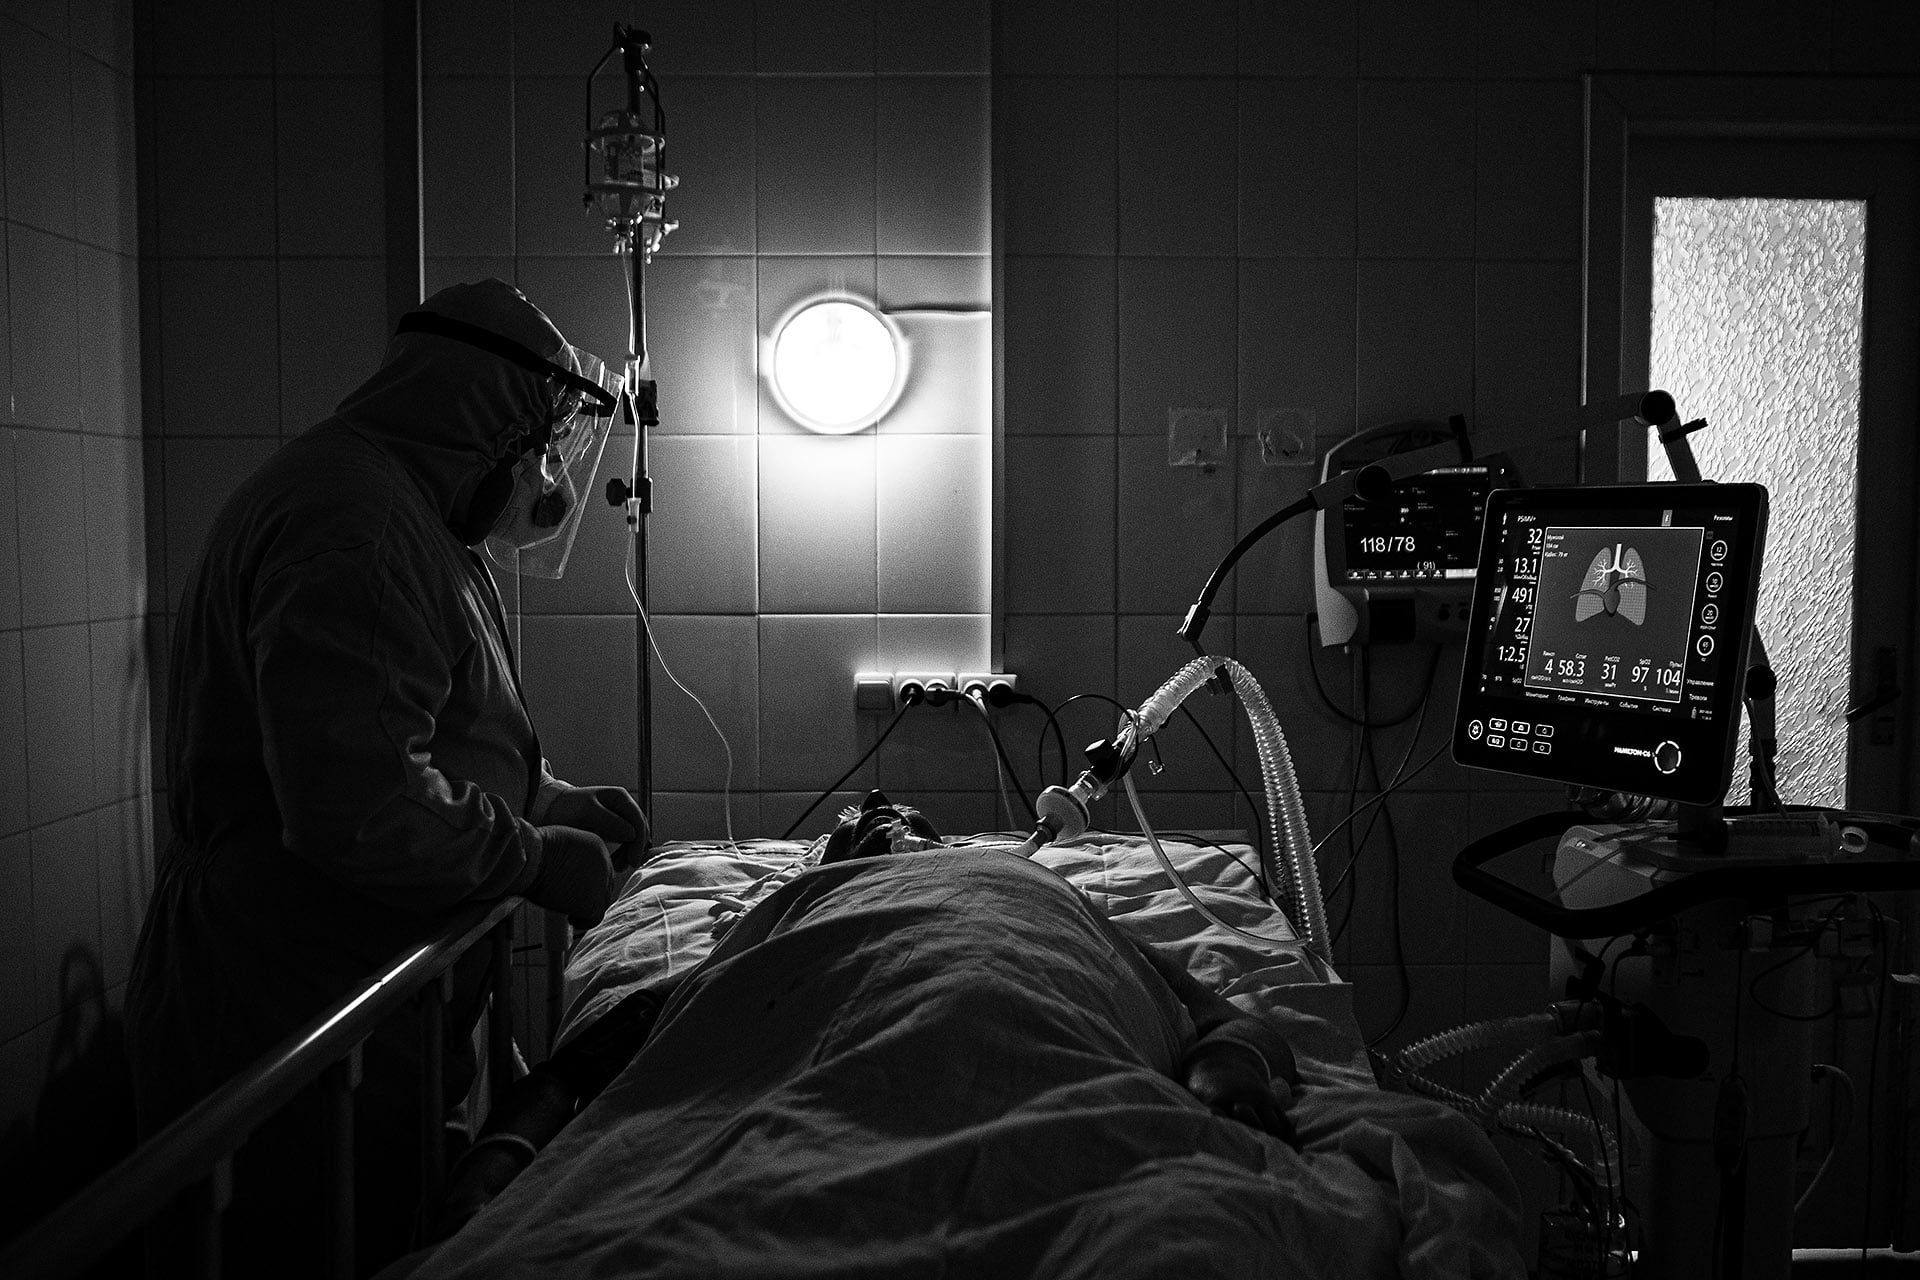 Ужгородський фотограф Сергій Гудак опублікував серію світлин з лікарями та хворими, які борються з Covid-19.